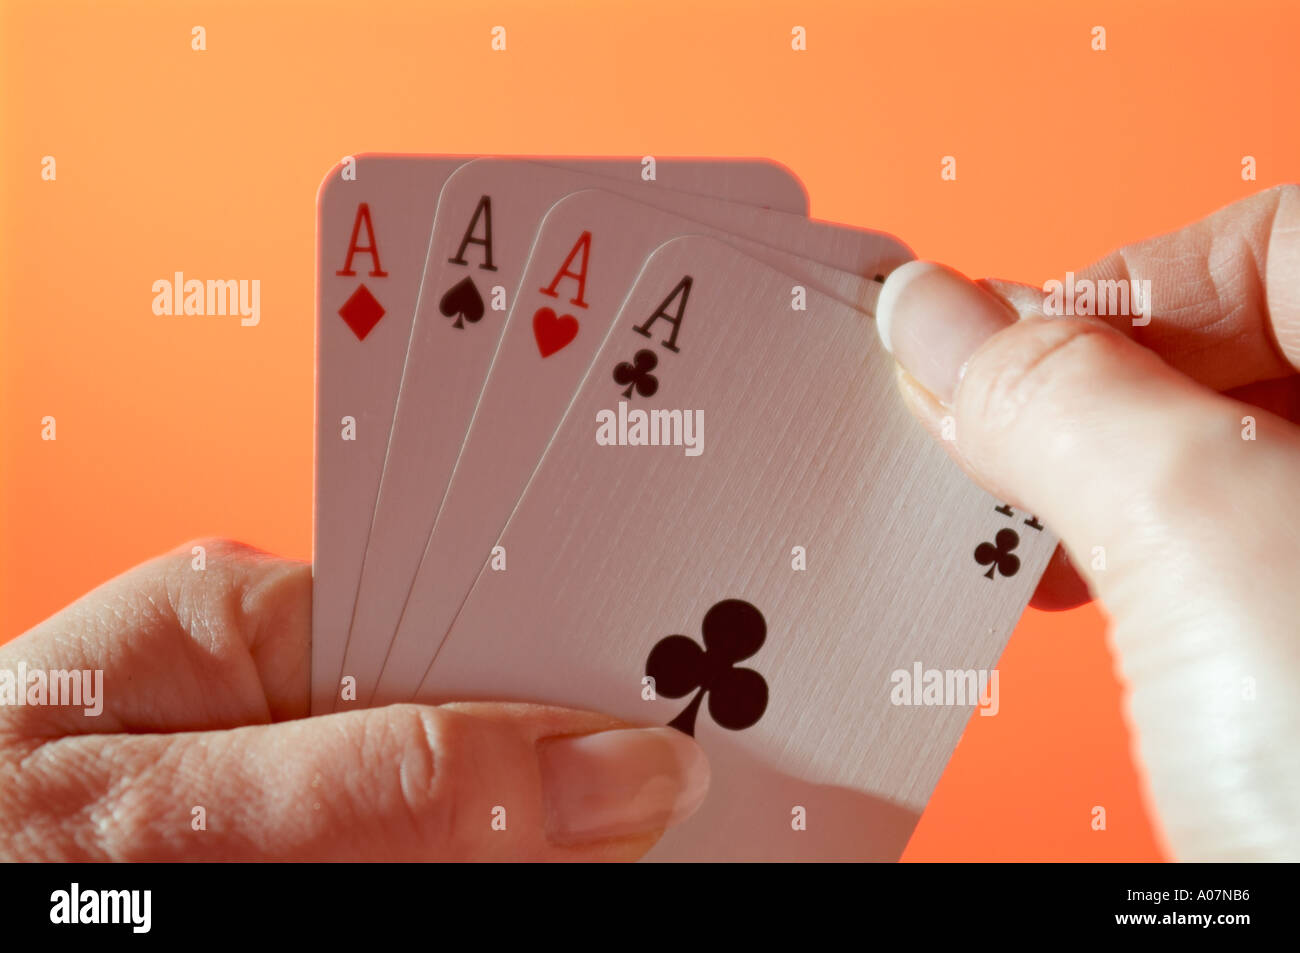 Hand holding ace cartes à jouer Banque D'Images